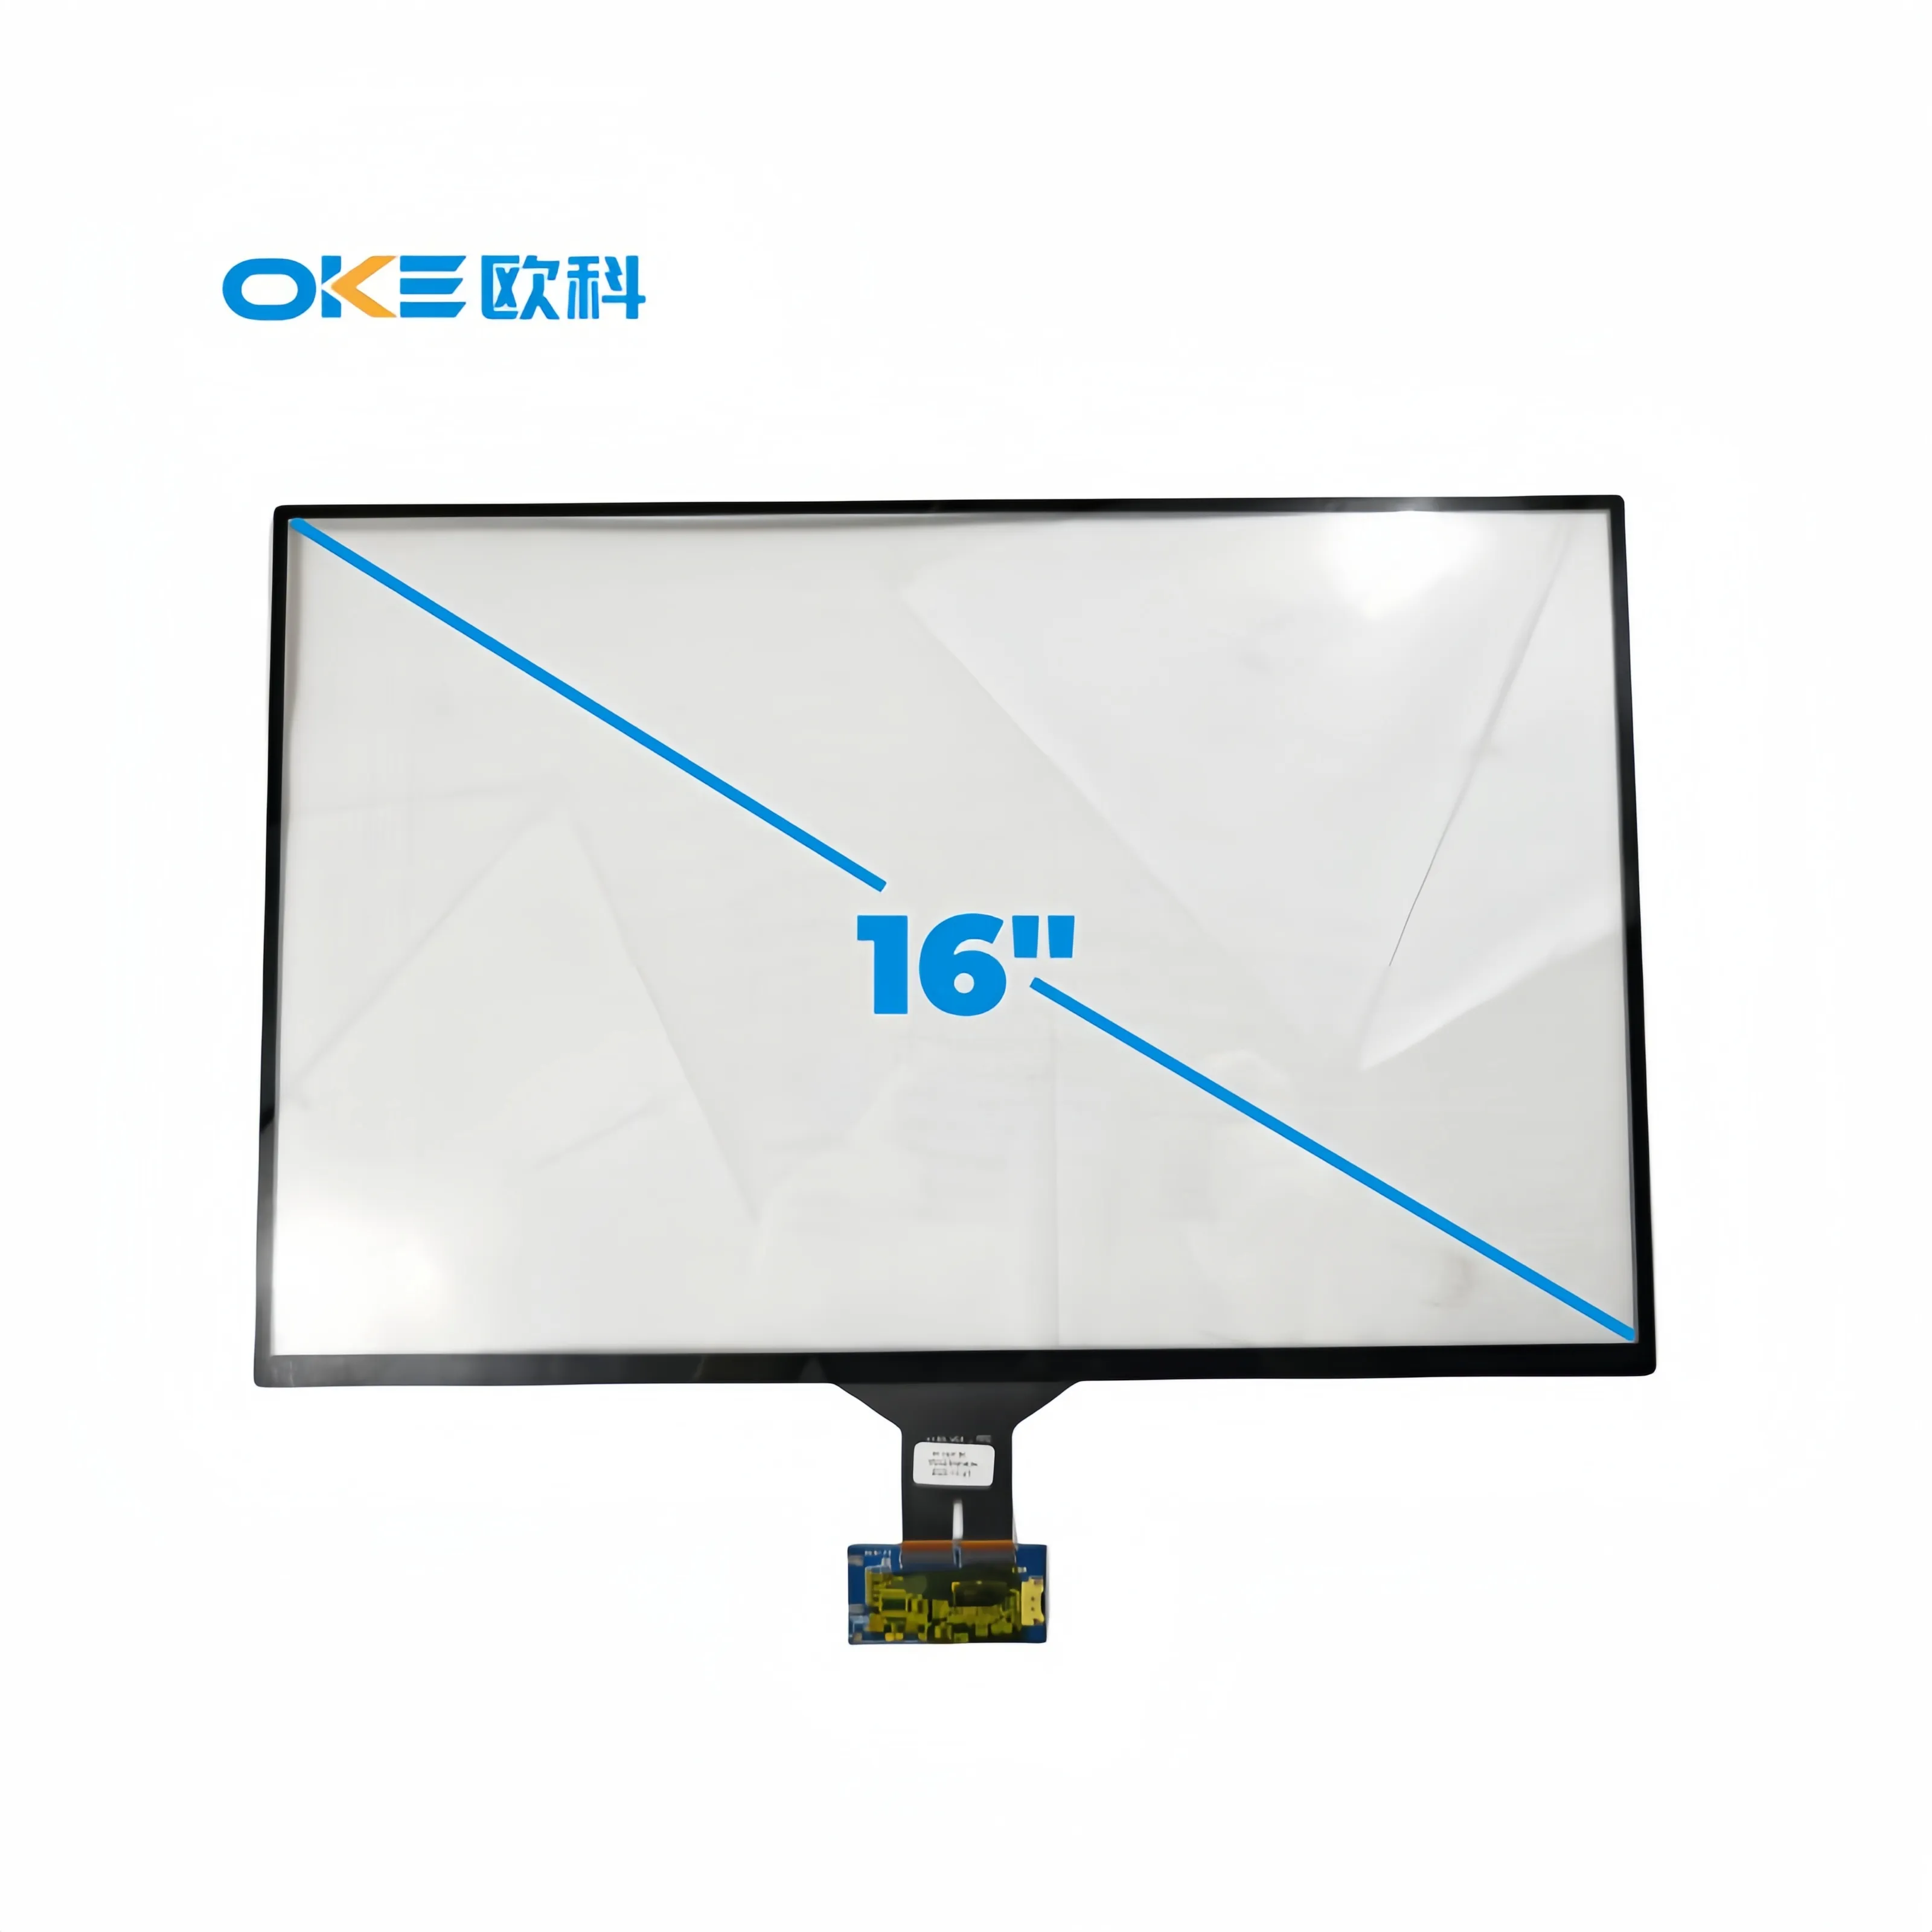 Oke pcap màn hình cảm ứng Bảng điều chỉnh 16 inch Độ sáng cao TFT cảm ứng LCD màn hình hiển thị module với cảm ứng điện dung màn hình